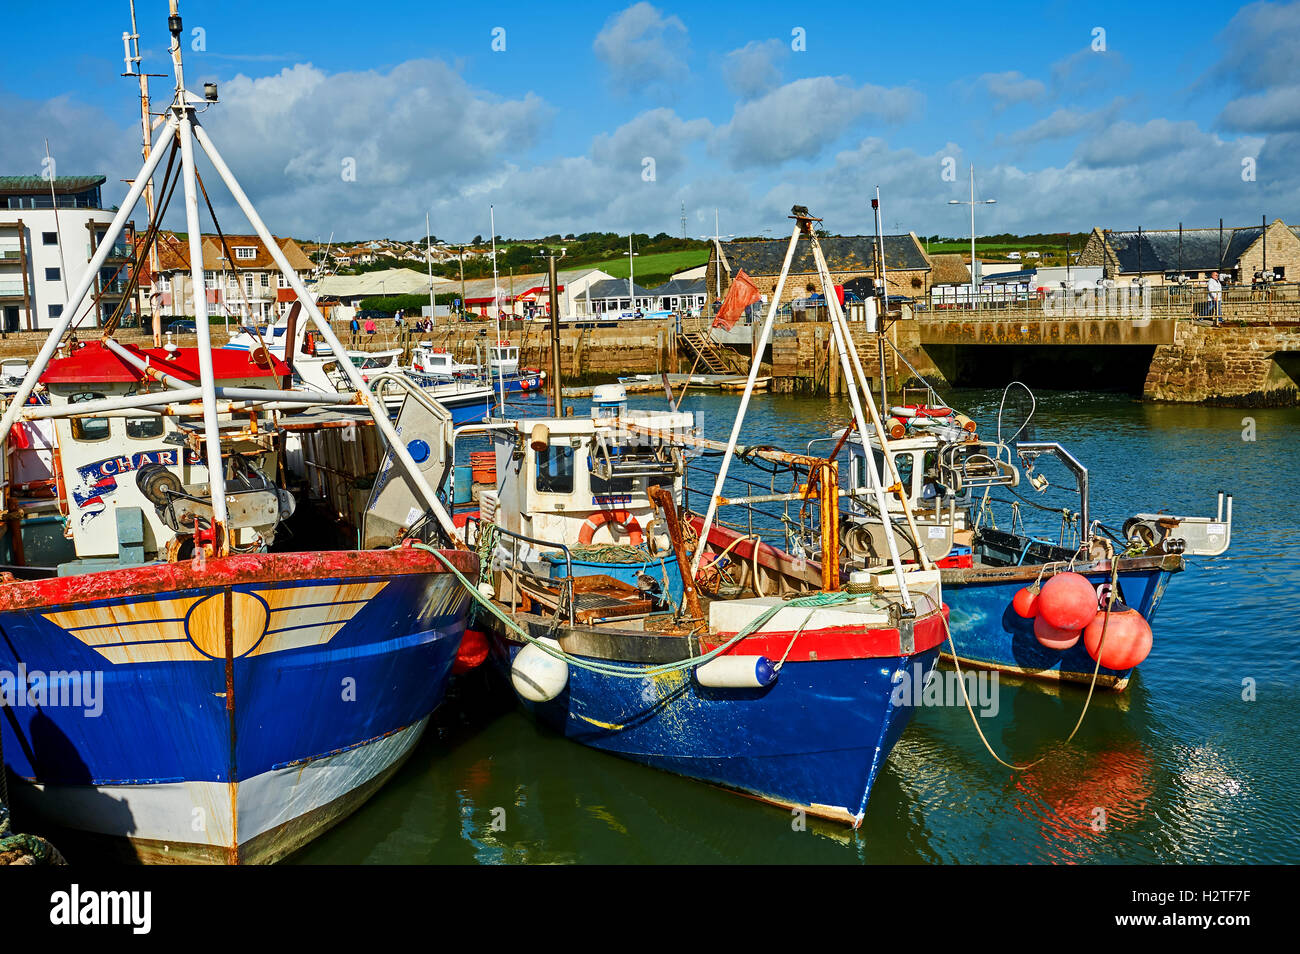 West Bay in Dorset ist ein kleiner Hafen hier mit einer Mischung aus Arbeiten angeln Boote gesehen. Der kleine Hafen von zentraler Bedeutung war die Serie Broadchurch. Stockfoto